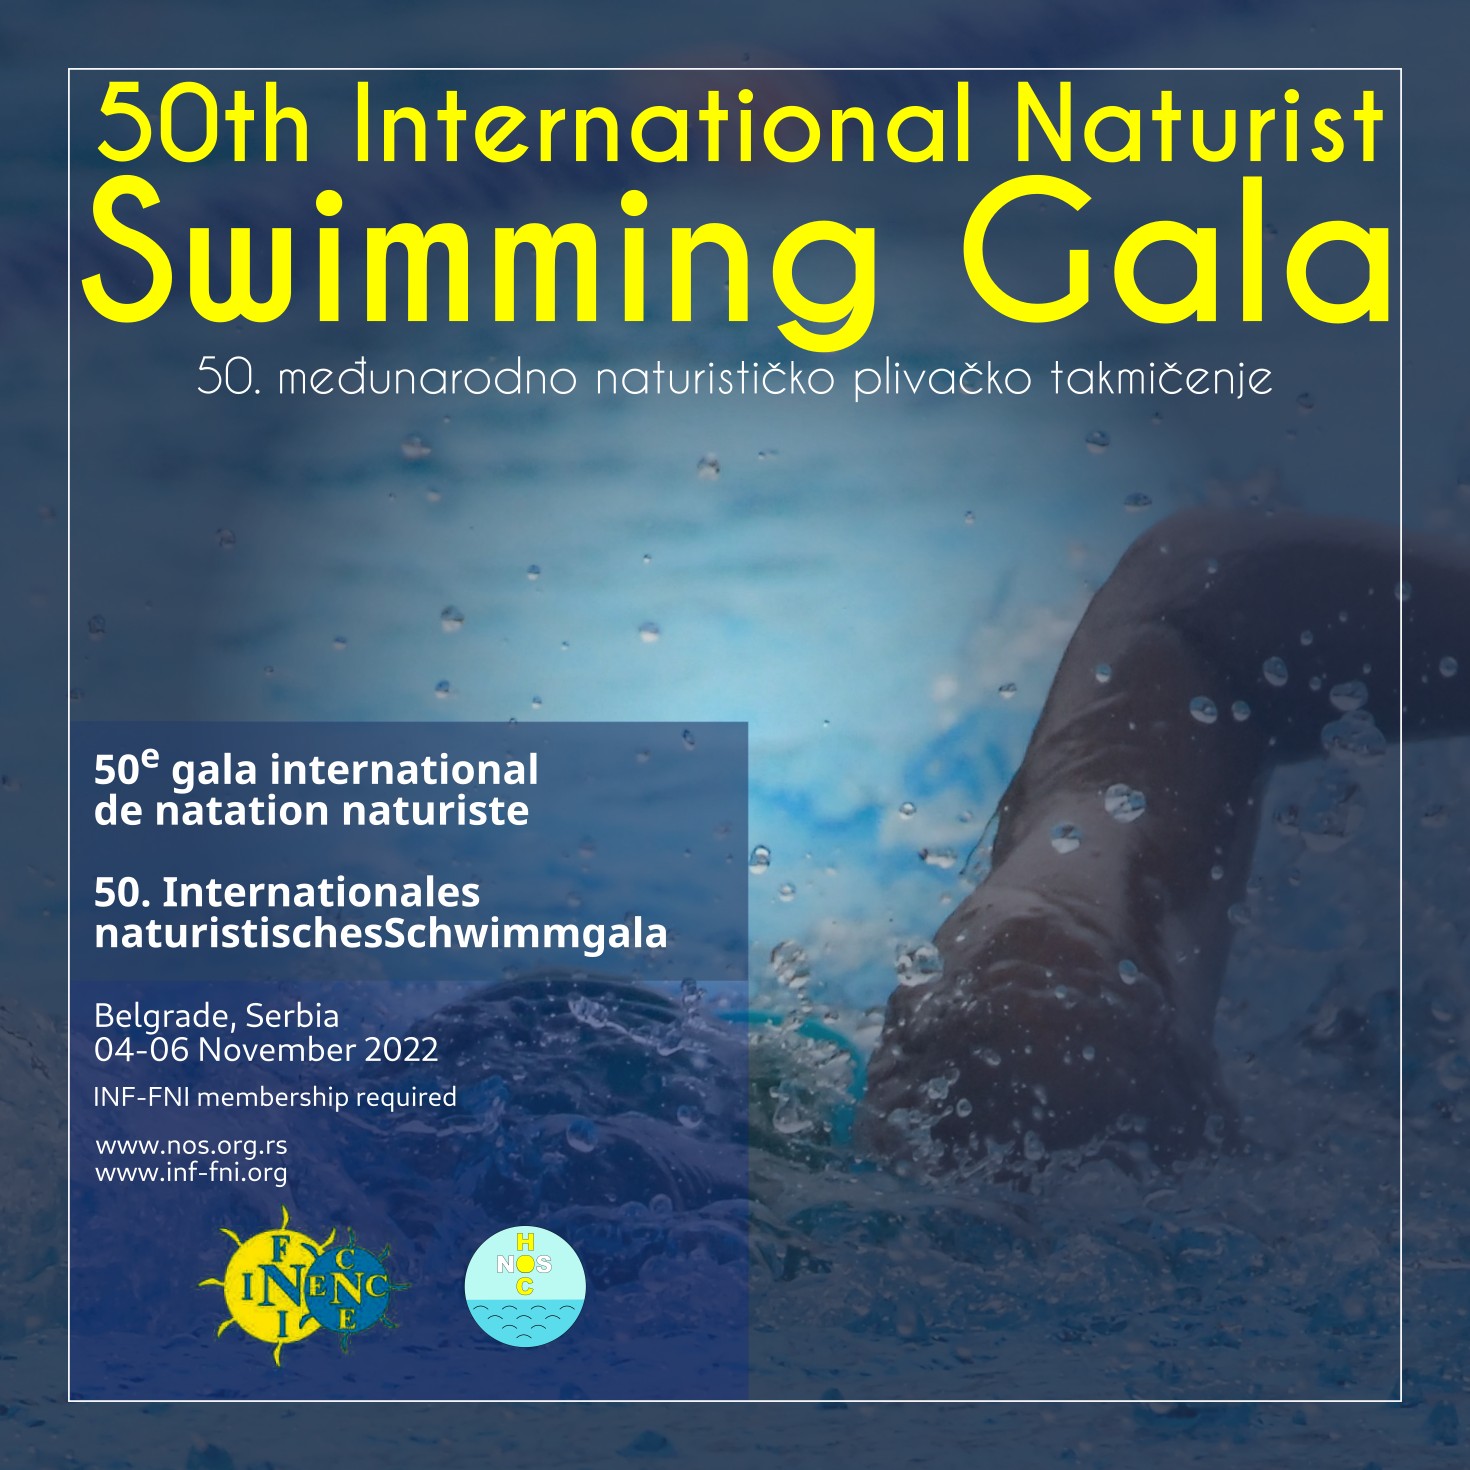 Beograd je domaćin međunarodnog naturističkog plivačkog takmičenja Swimming Gala 2022